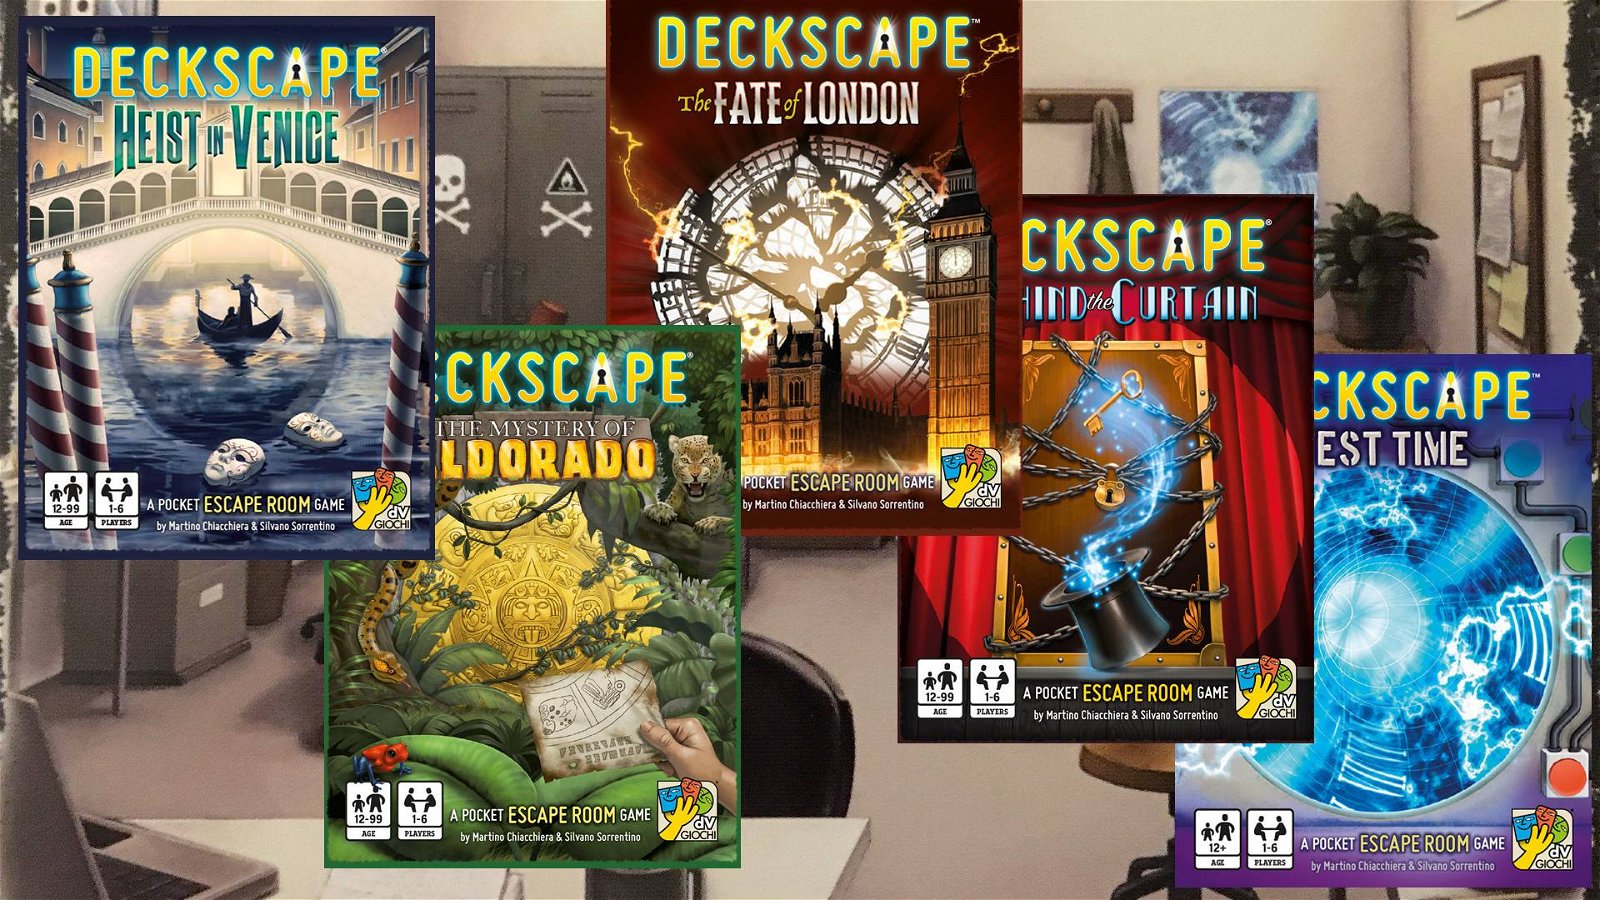 Immagine di Deckscape, la recensione (senza spoiler) dei primi 5 capitoli